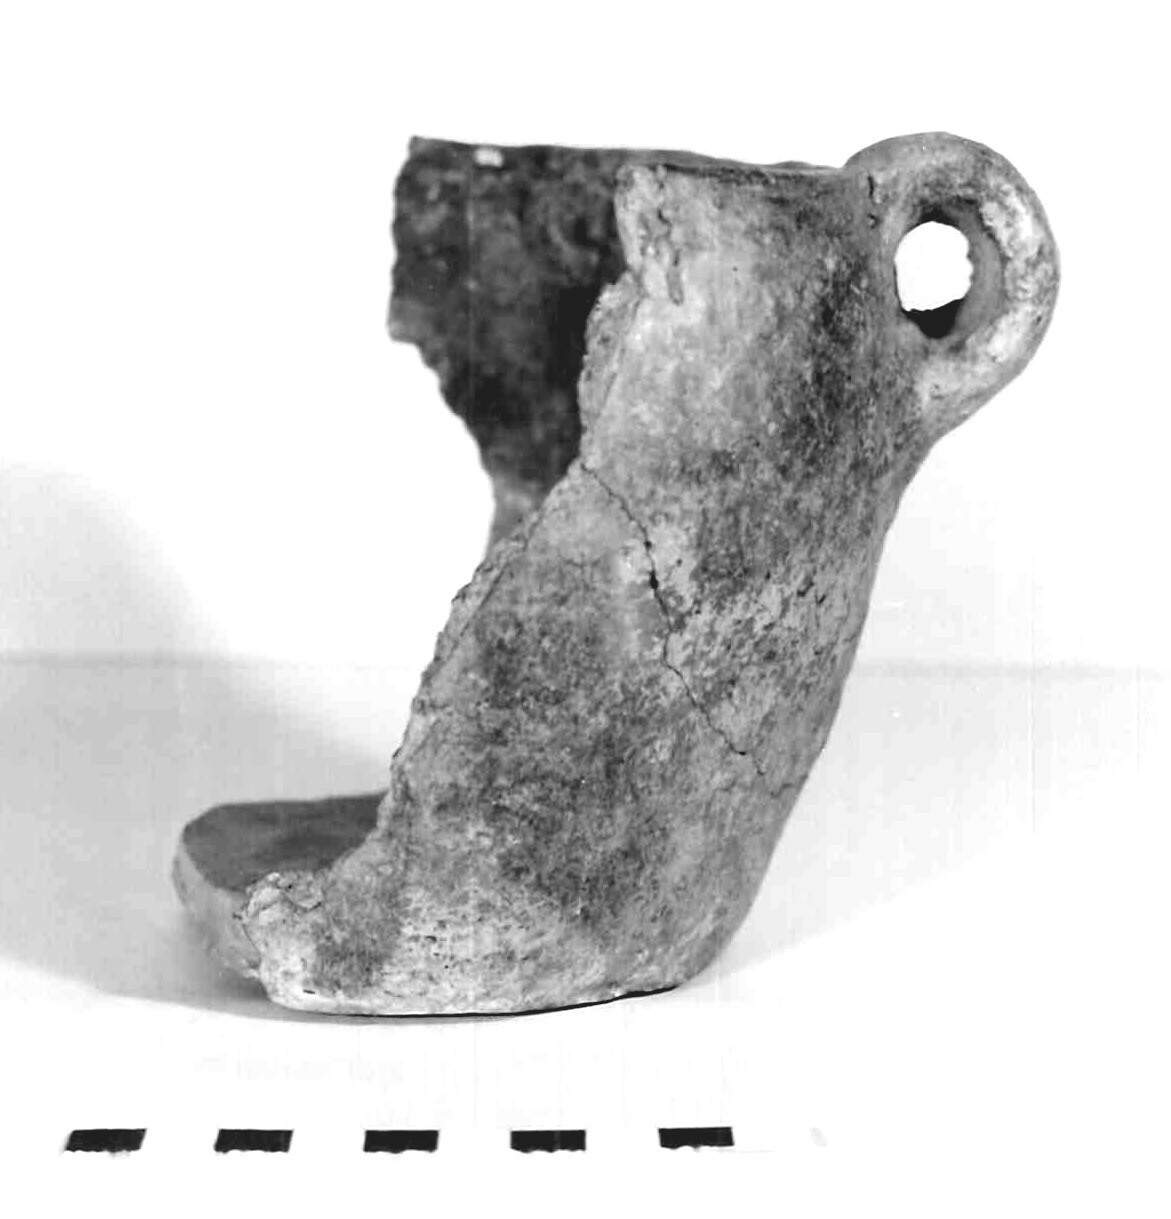 olla biansata - subappenninico (età del bronzo recente)